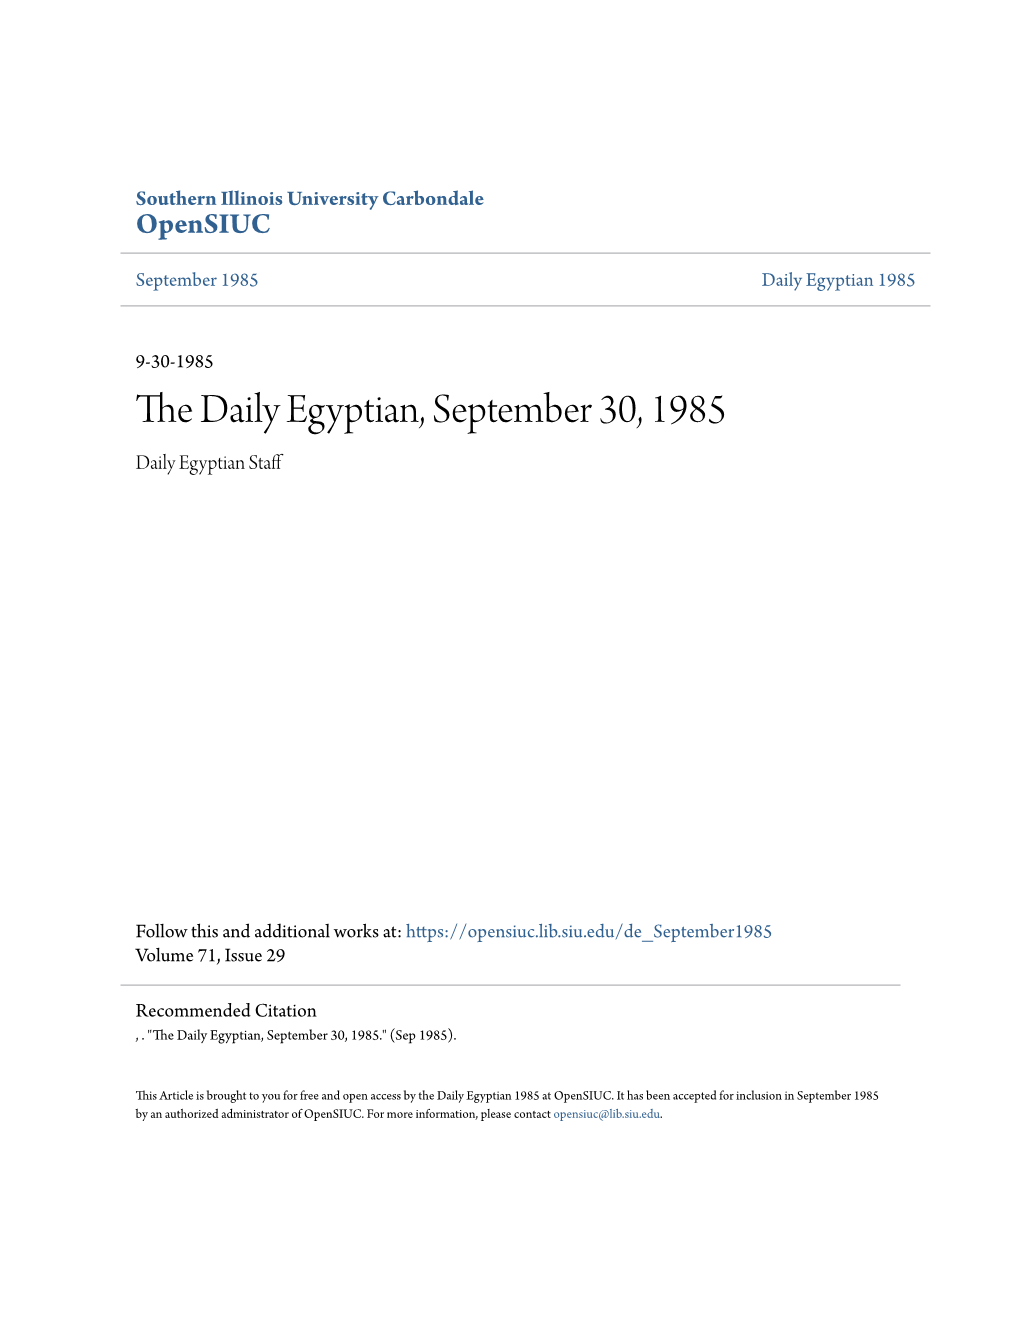 The Daily Egyptian, September 30, 1985